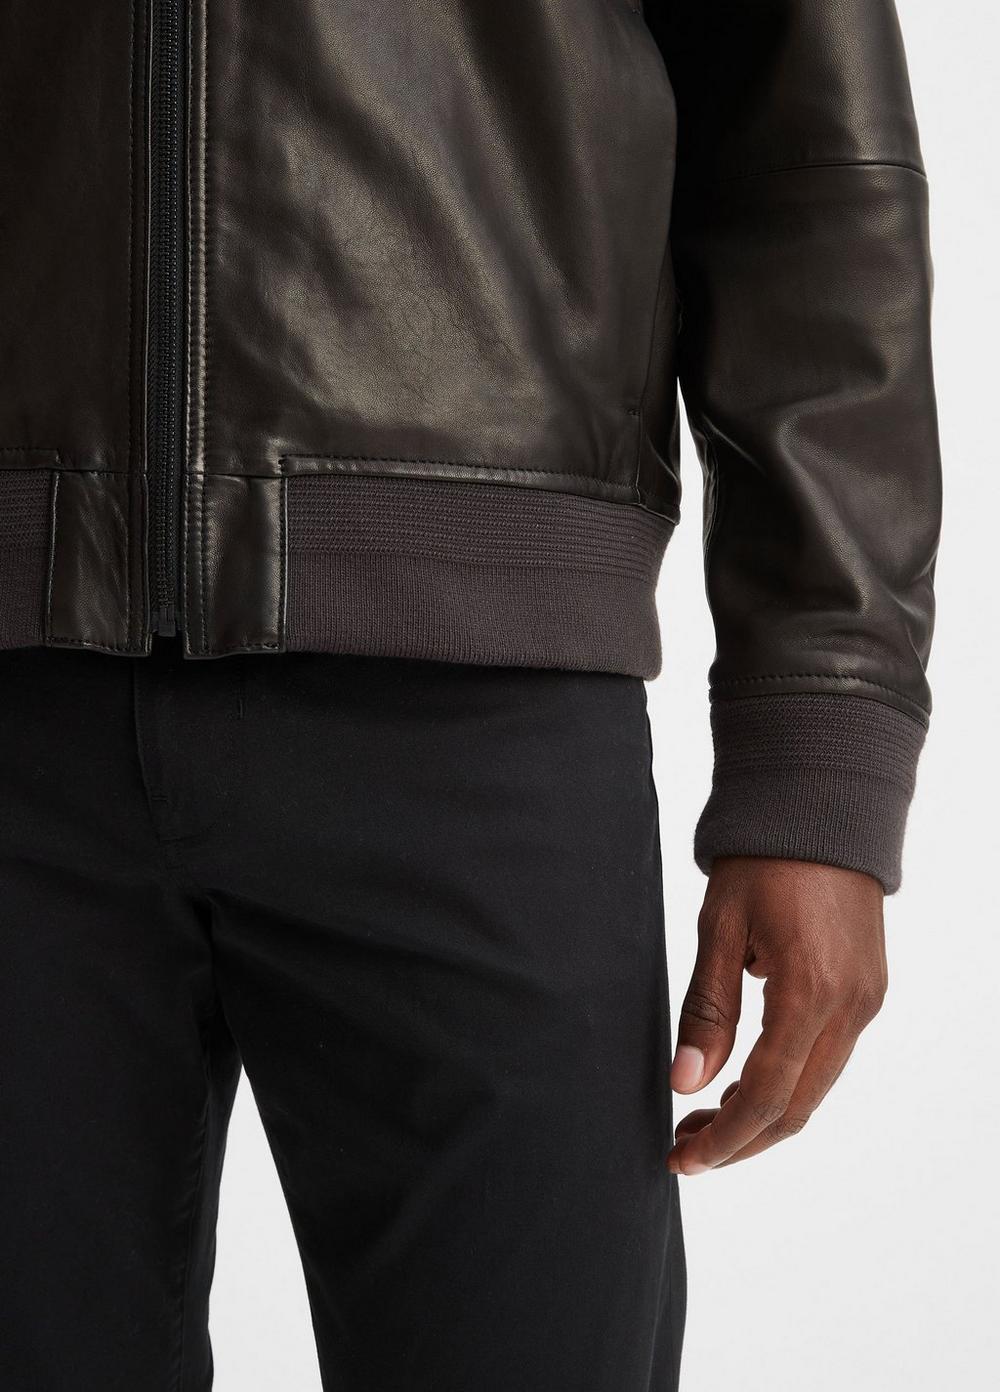 Leather Harrington Bomber Jacket